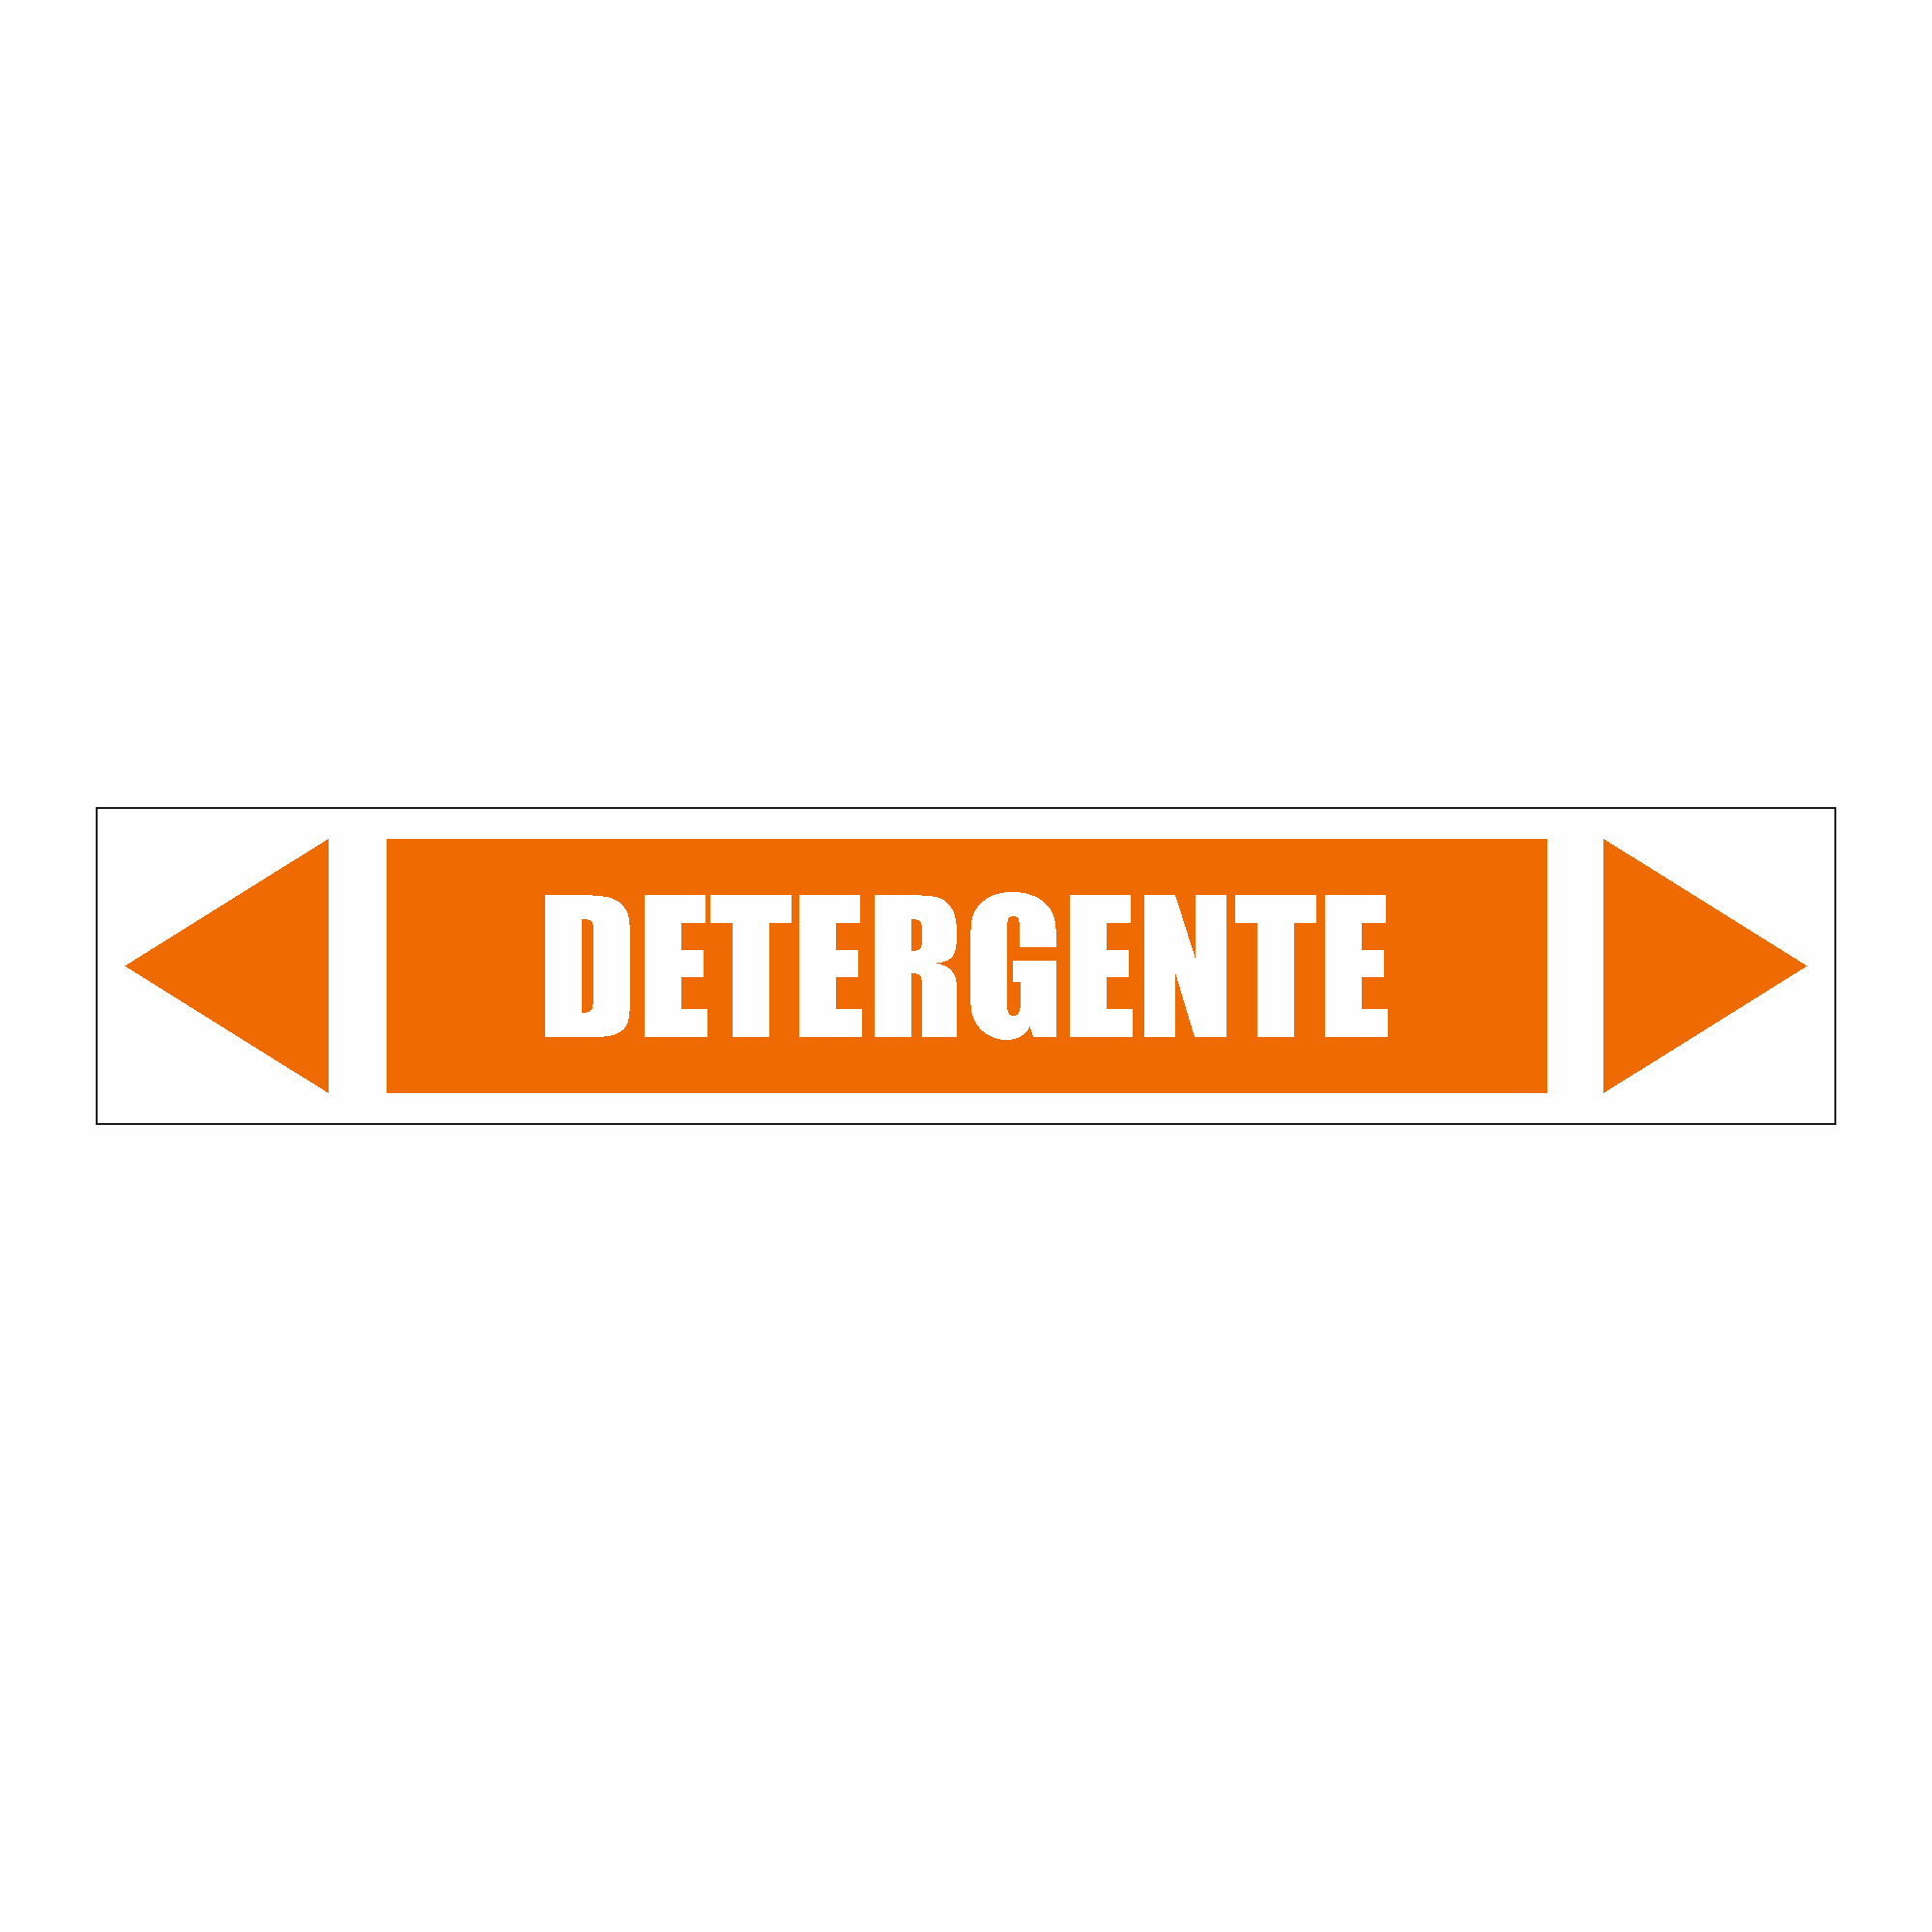 IDT 060 - Detergente